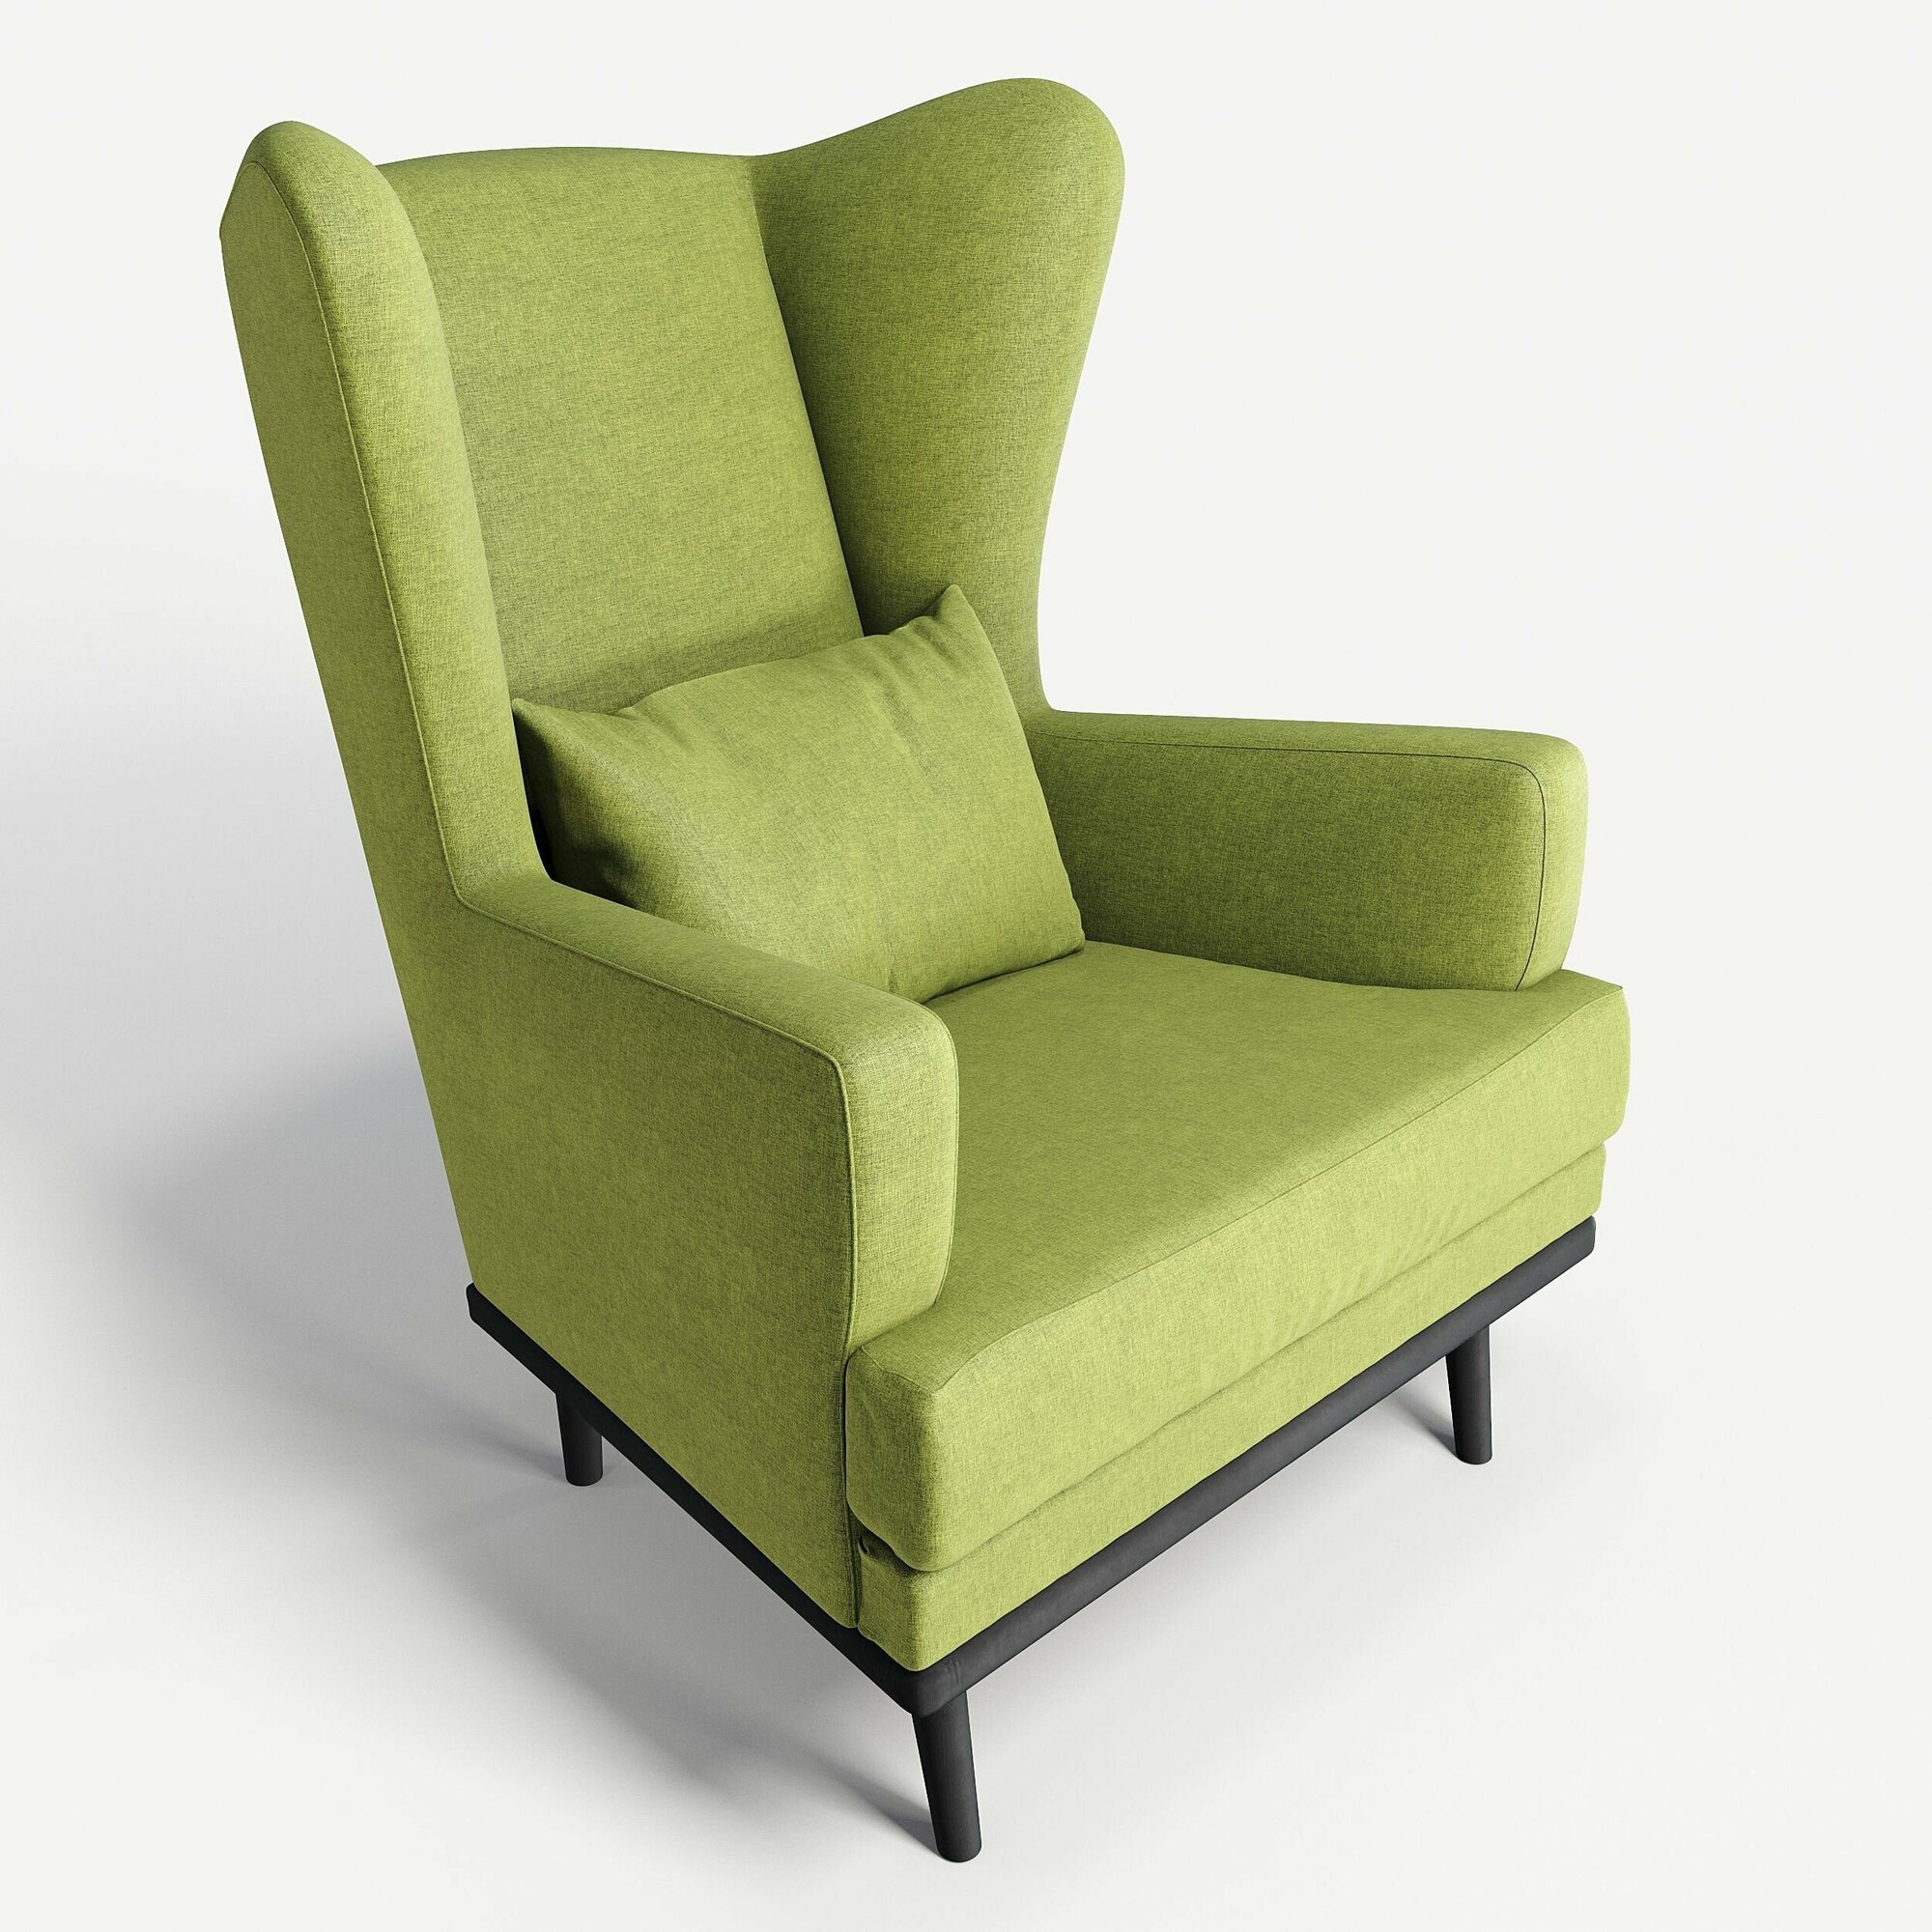 Кресло мягкое с ушами Фантазёр D-7 (зеленый) на высоких ножках, для отдыха и чтения книг. В гостиную, балкон, спальню и переговорную комнату.